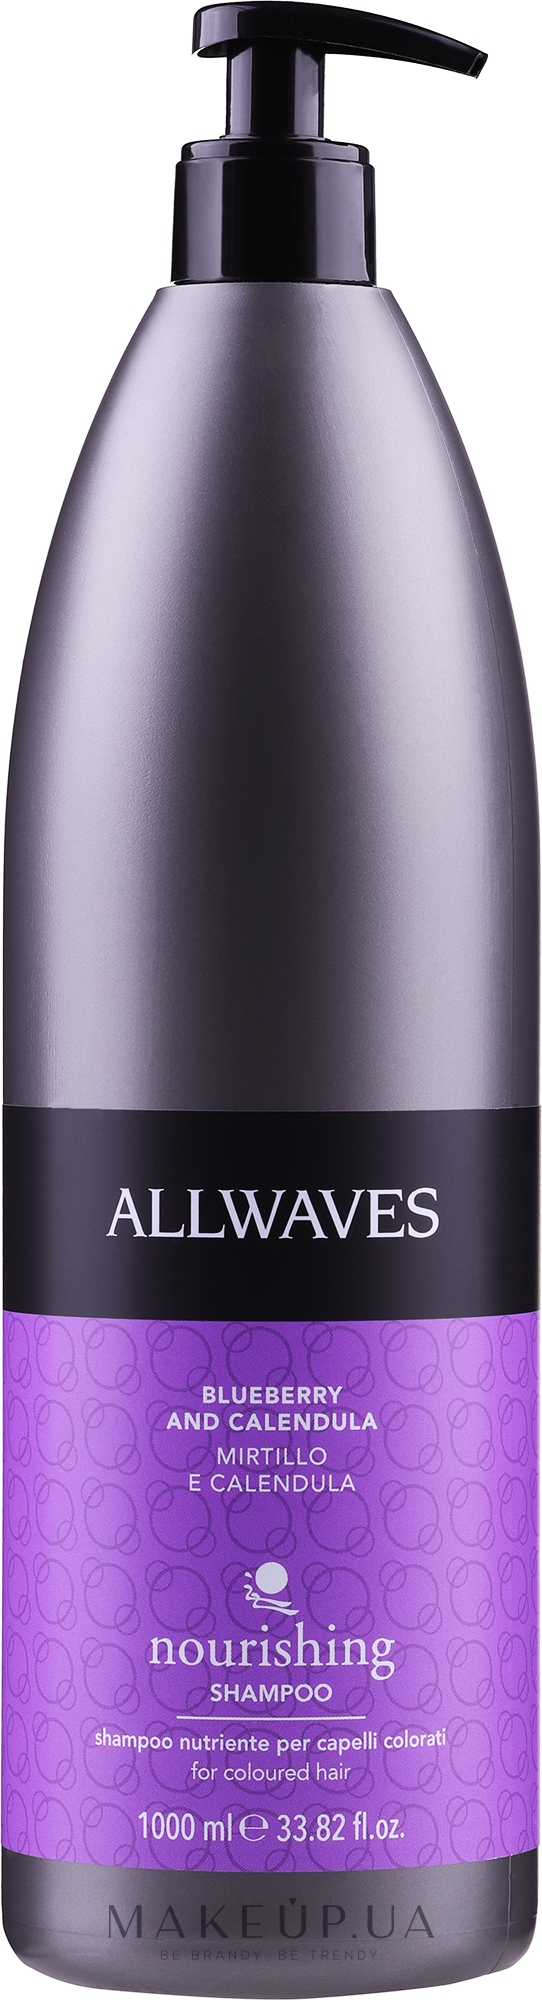 Питательный шампунь для окрашенных волос - Allwaves Nourishing Shampoo — фото 1000ml